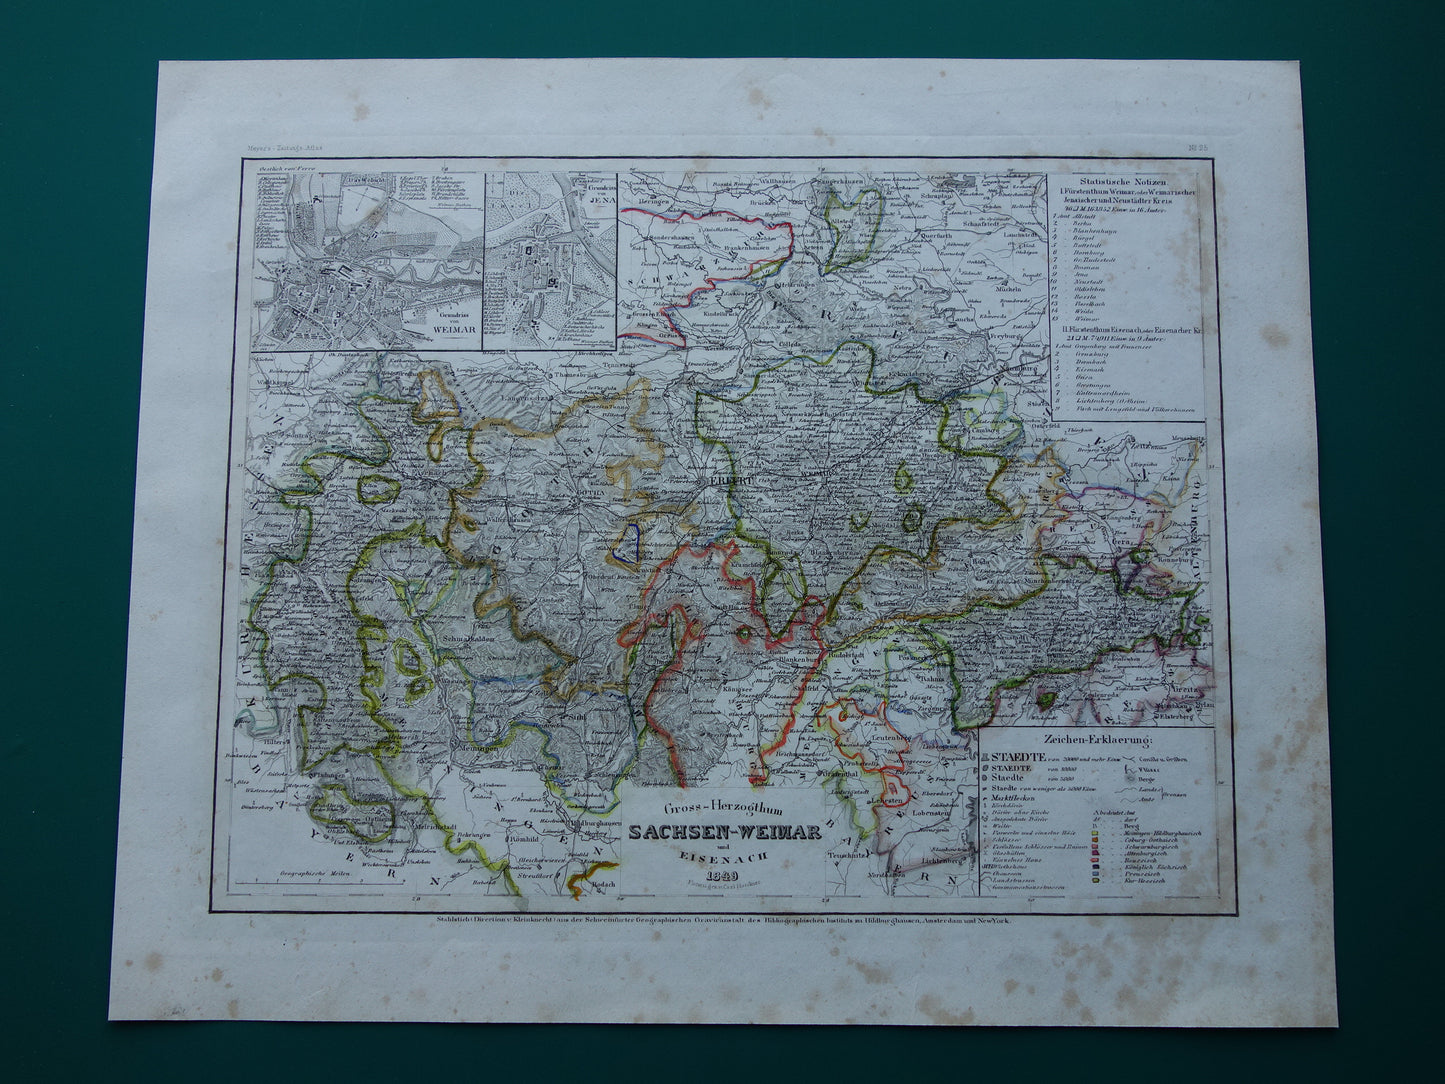 Groothertogdom Saksen-Weimar-Eisenach oude kaart uit 1849 - originele antieke landkaart Duitsland Thüringen Weimar Jena - vintage kaarten